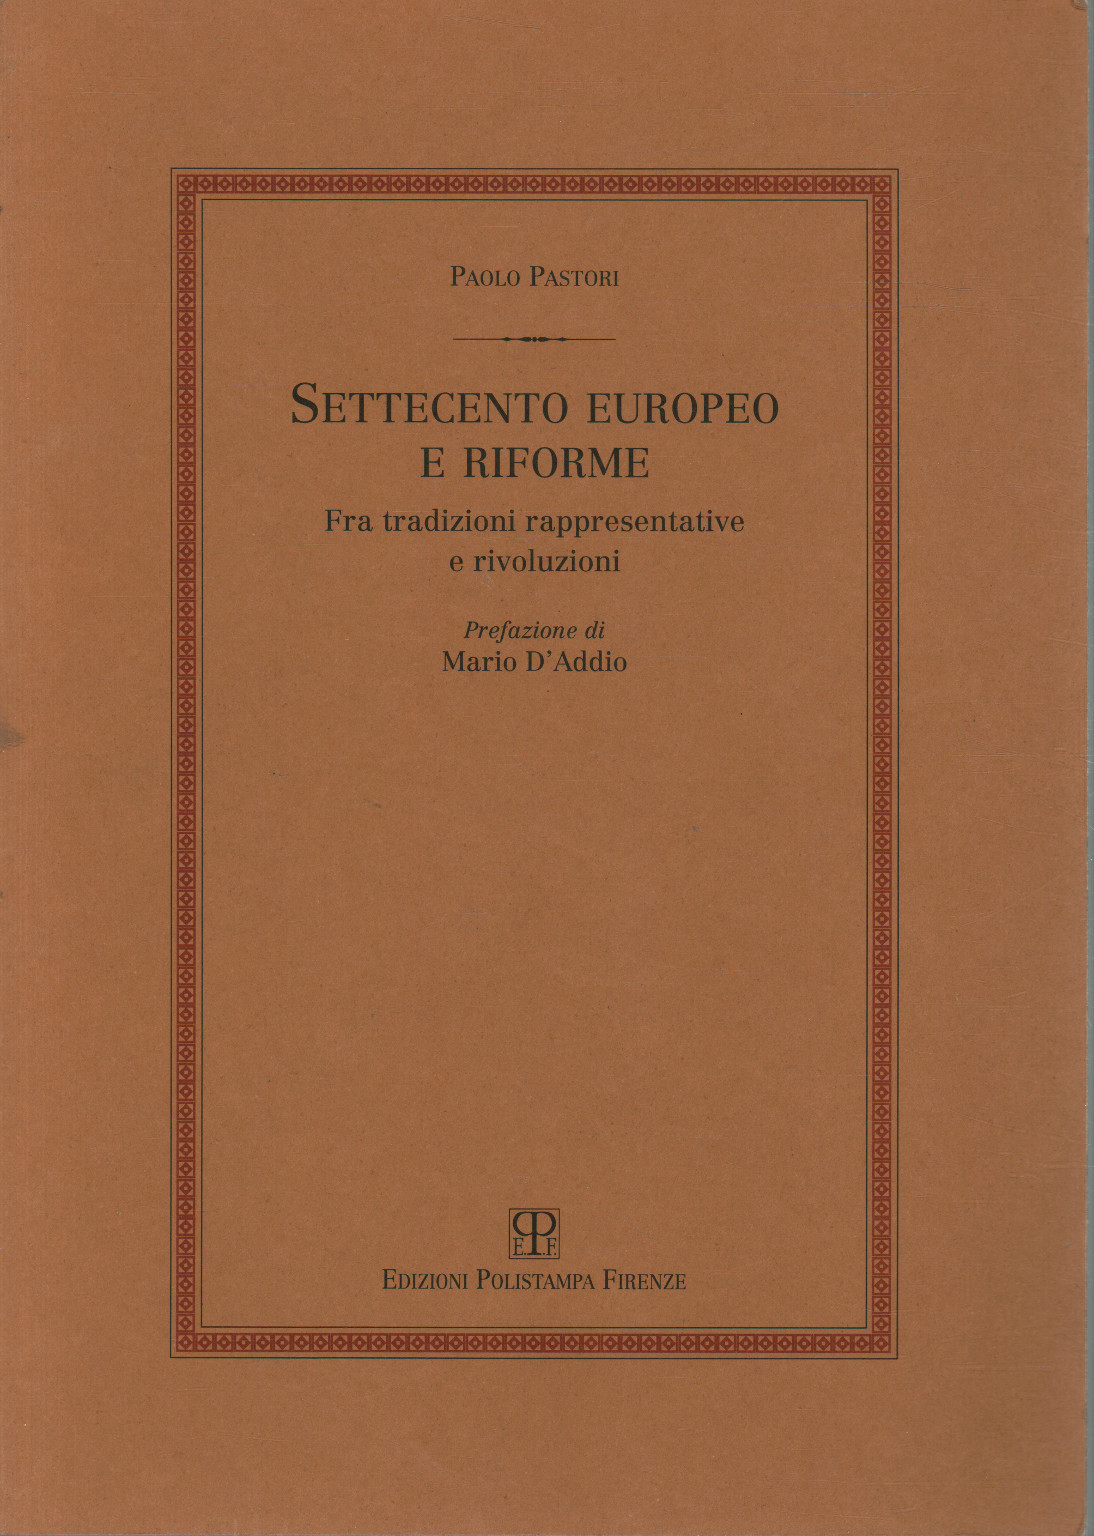 El siglo XVIII europeo y sus reformas, Paolo Pastori